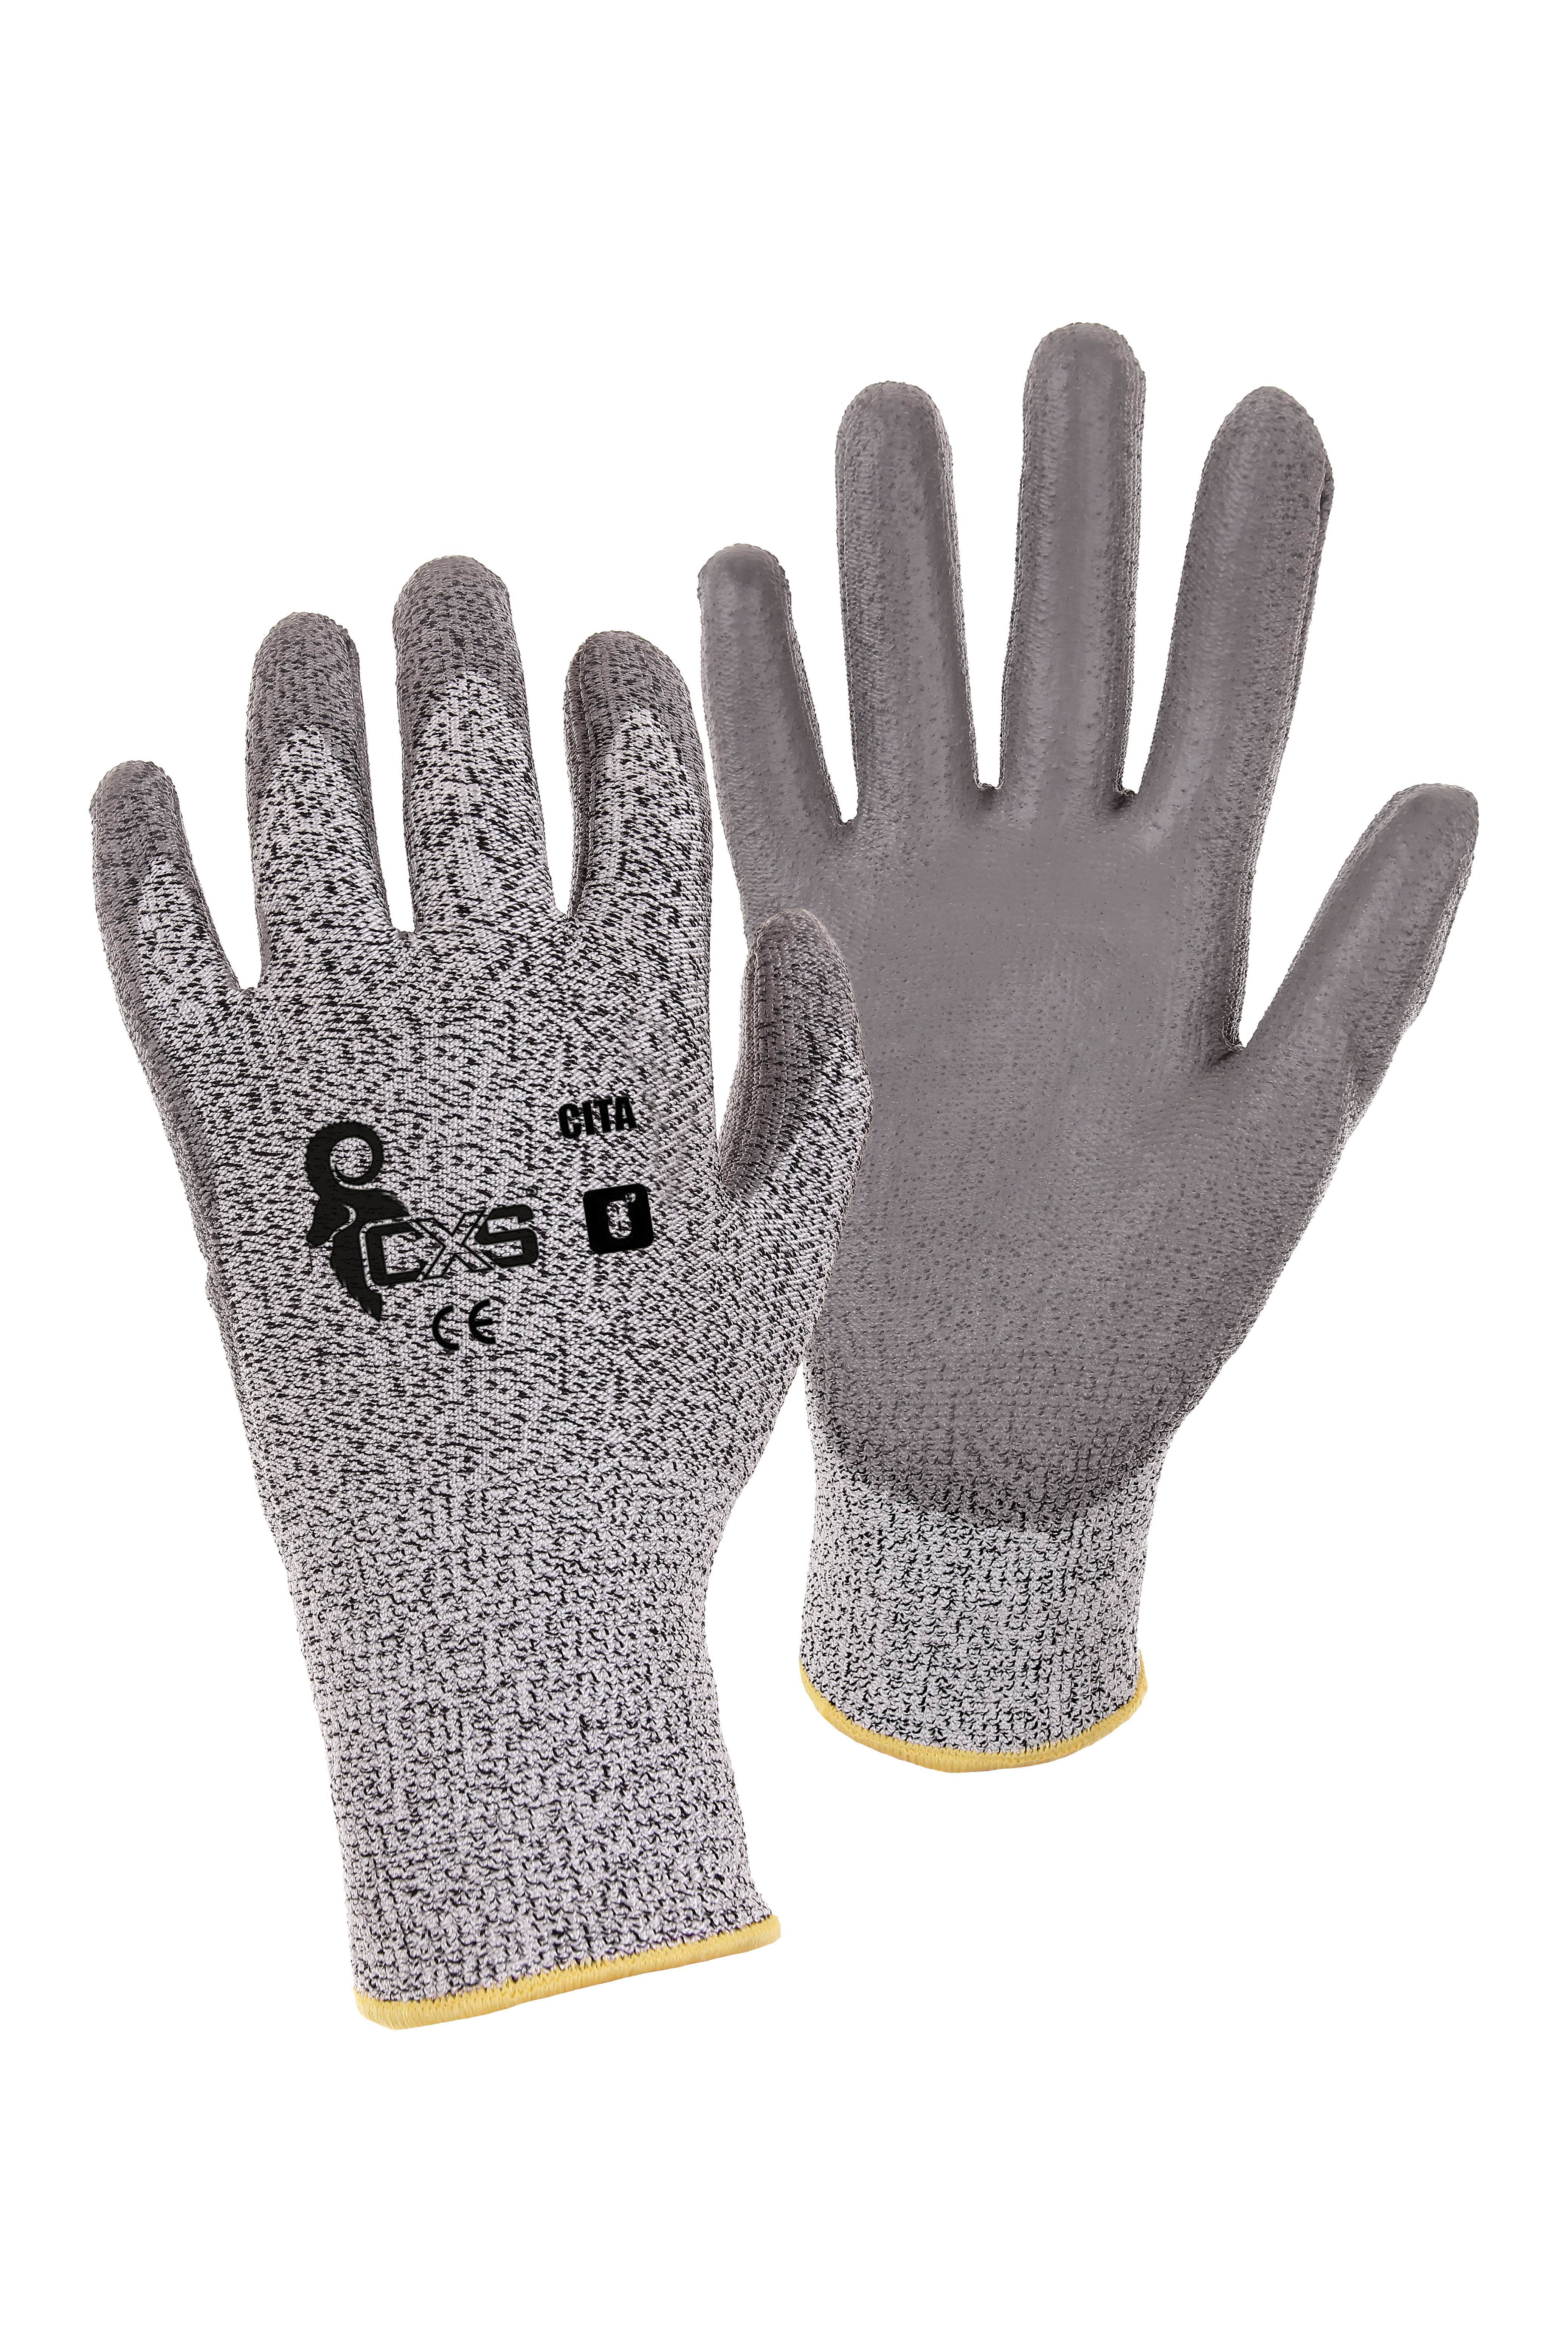 rukavice CITA, protipořezové, šedé, velikost 7 0.04 Kg TOP Sklad4 606057 11